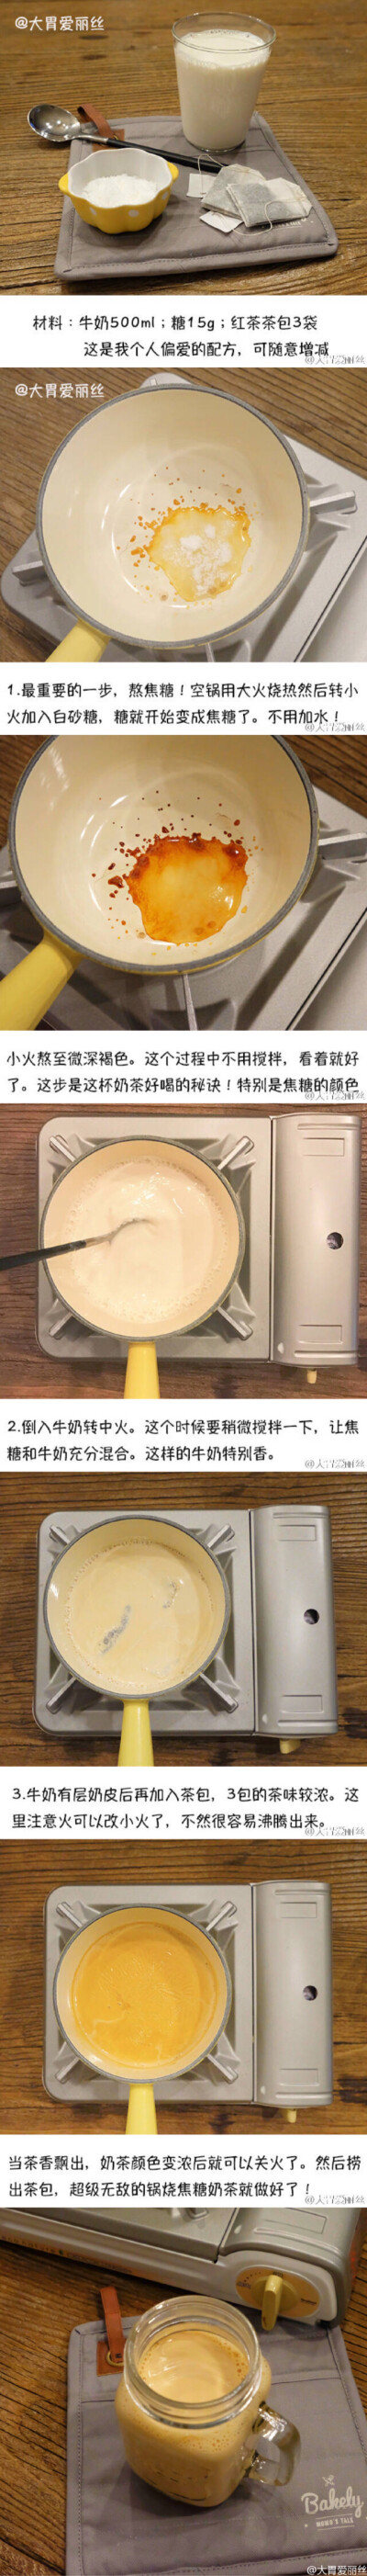 超级简单的3步焦糖锅烧奶茶